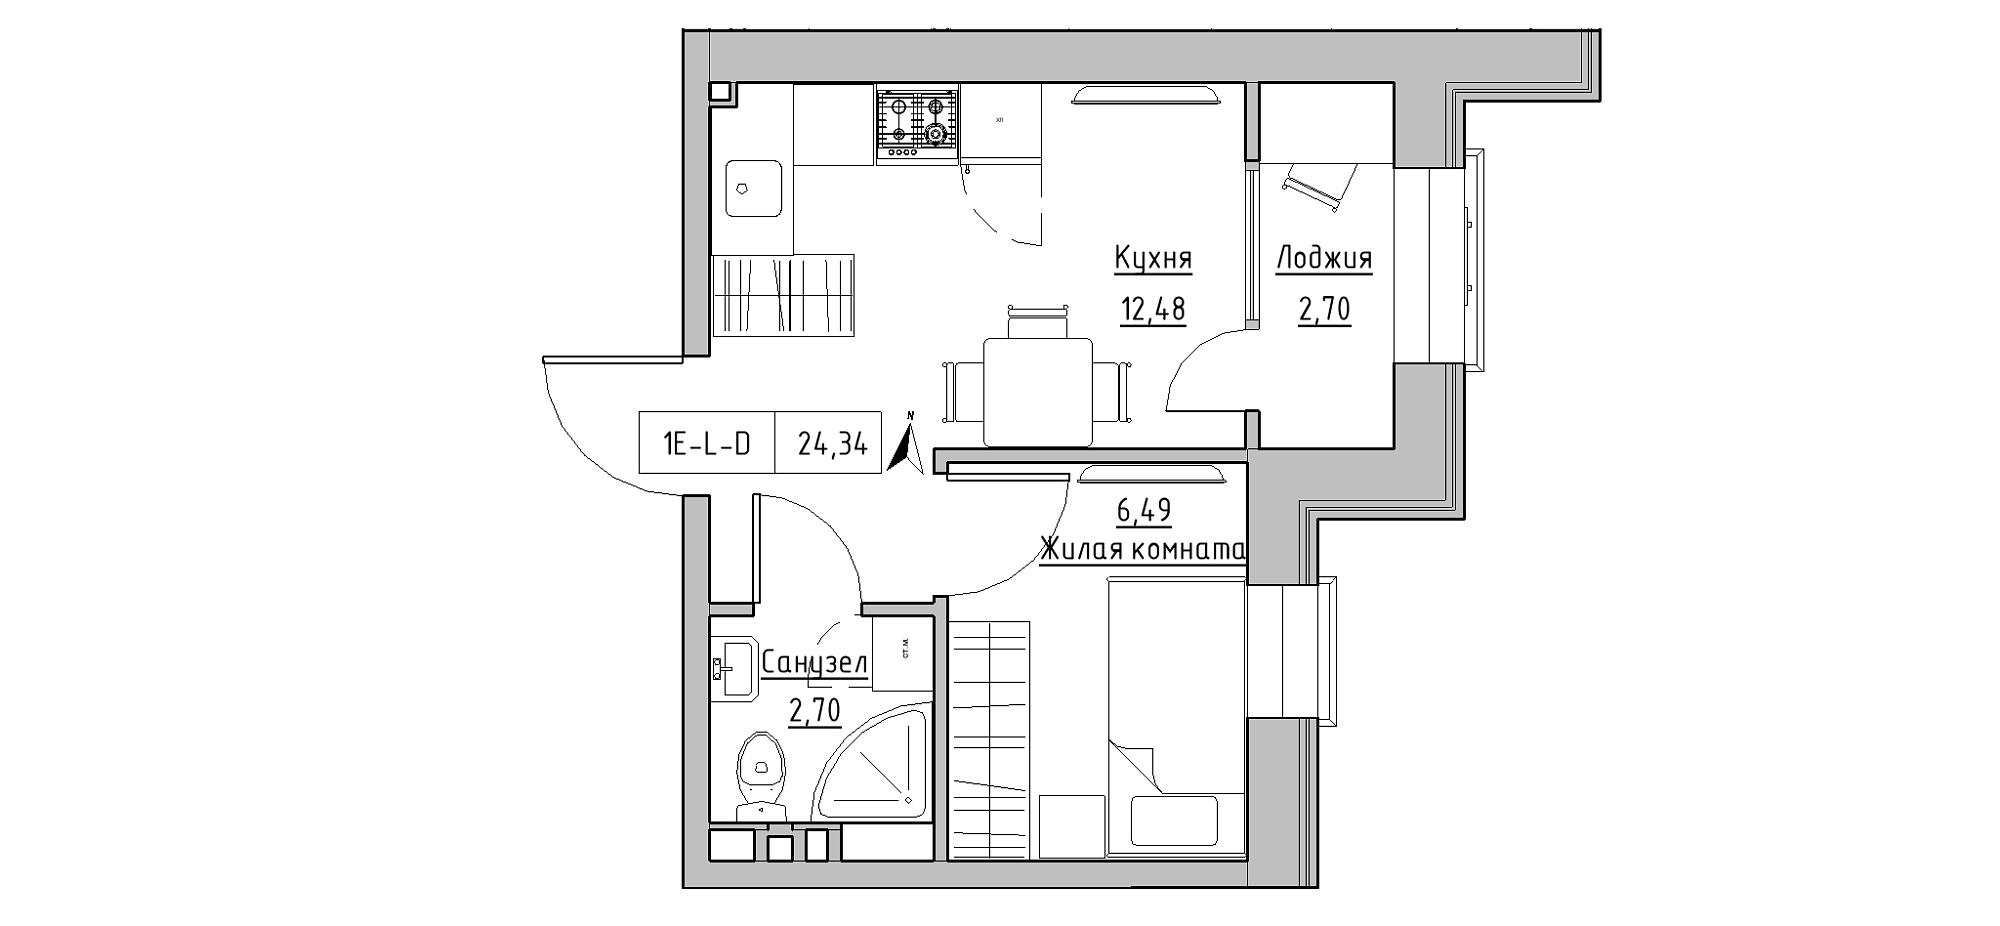 Планировка 1-к квартира площей 24.34м2, KS-020-04/0015.